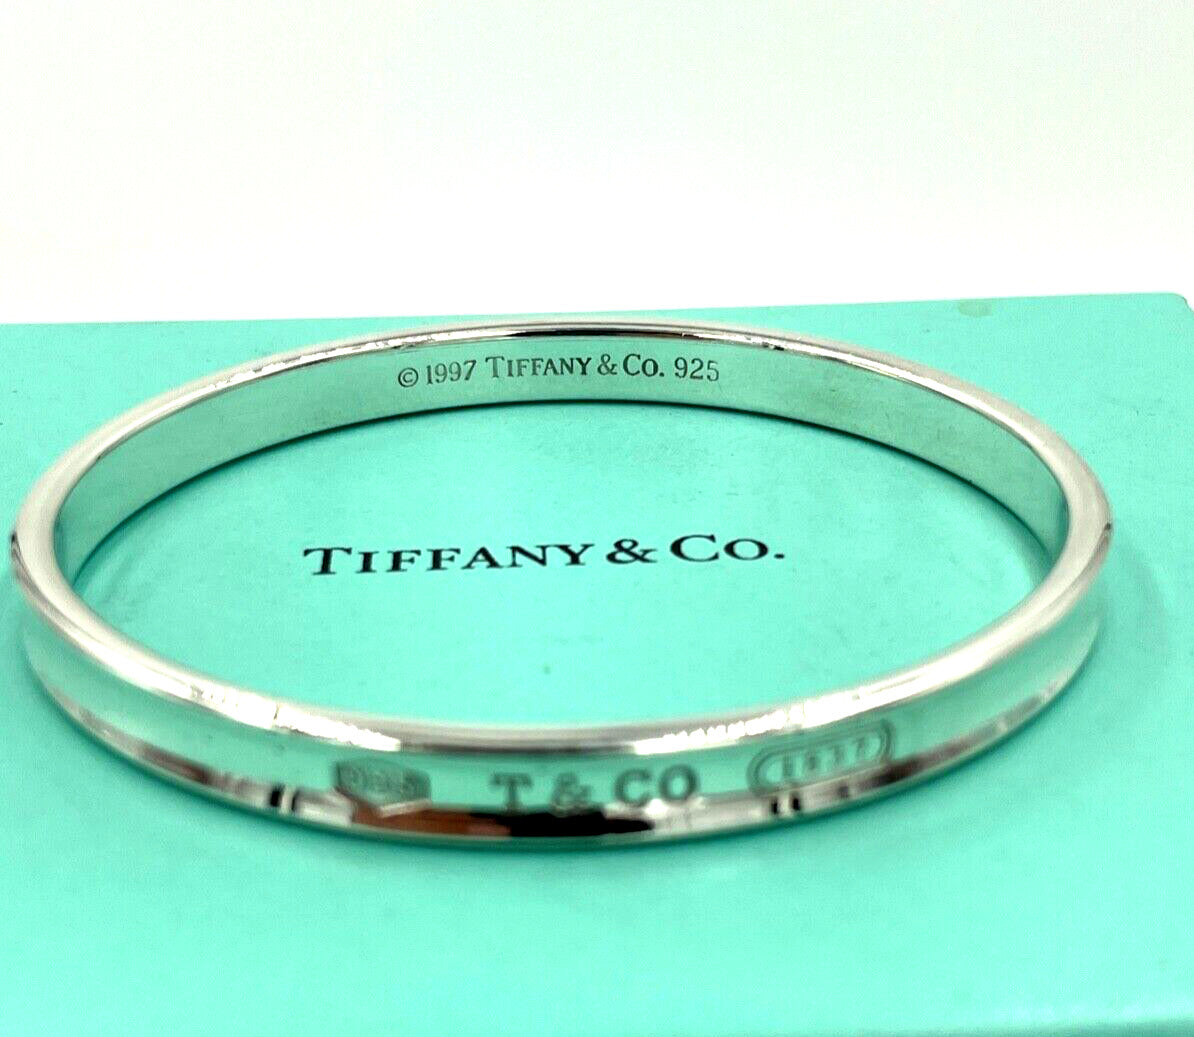 Tiffany & Co. 1837 Bangle Bracelet Sterling Silver 925